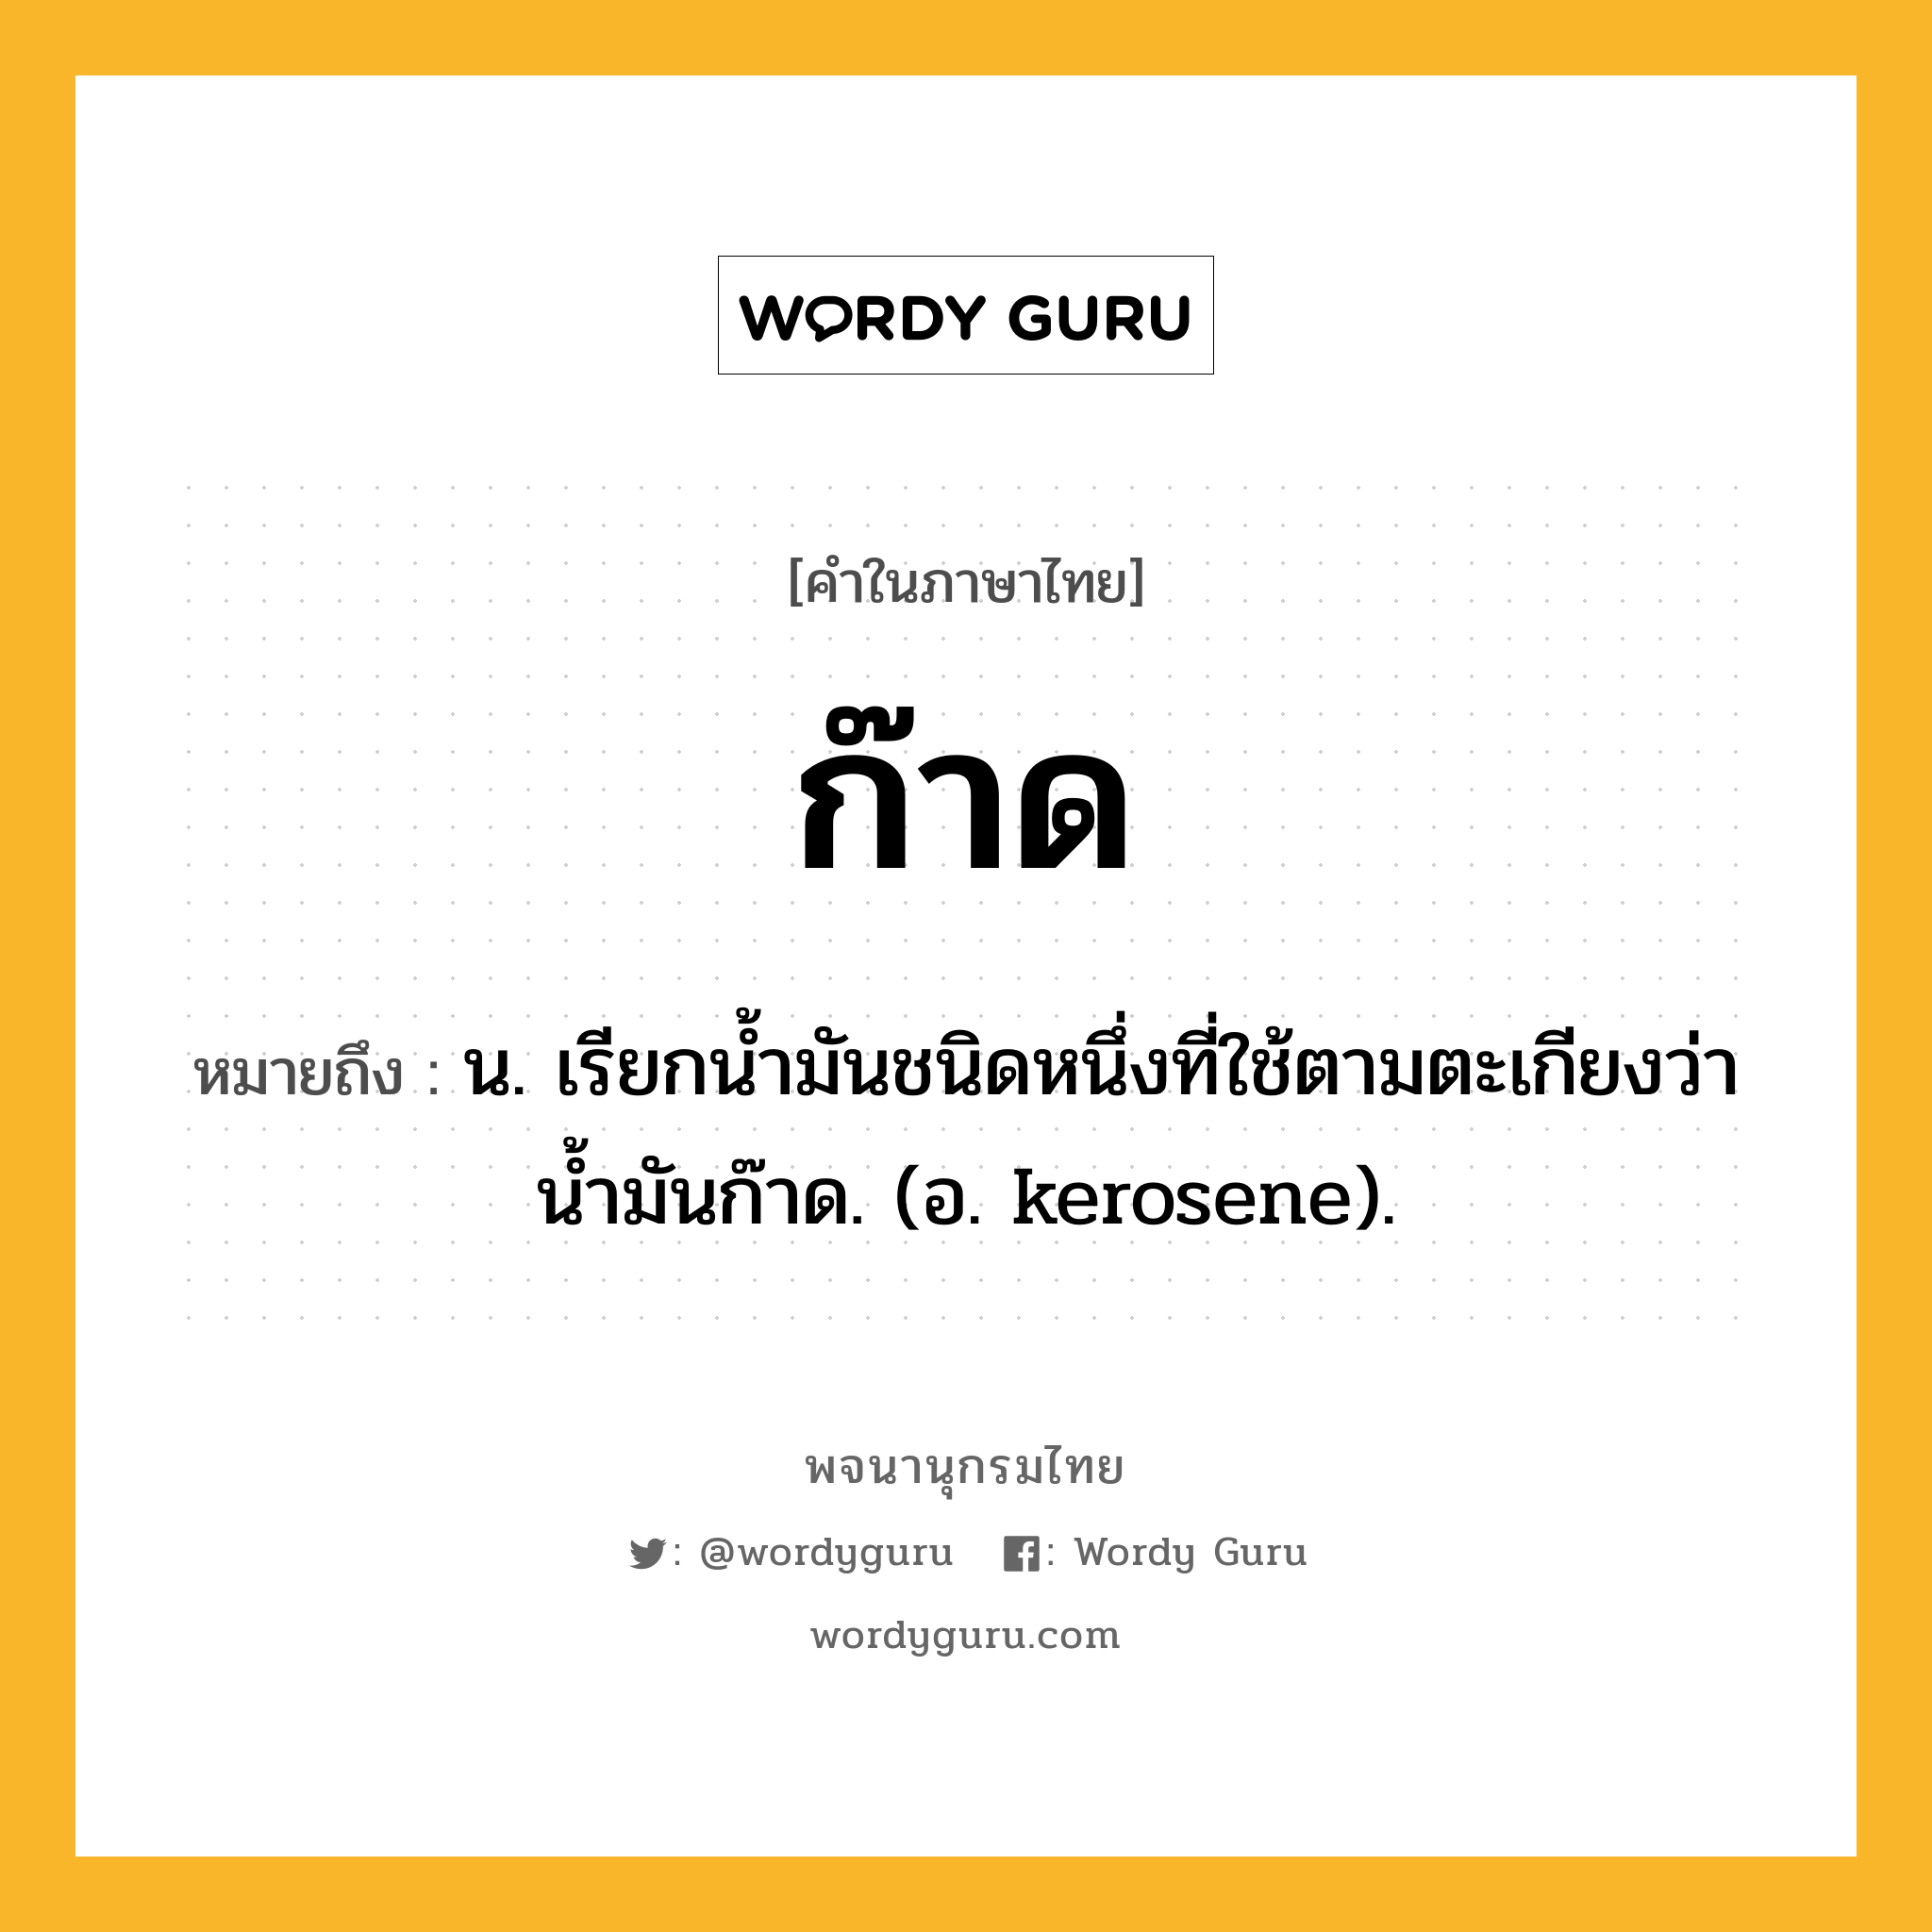 ก๊าด หมายถึงอะไร?, คำในภาษาไทย ก๊าด หมายถึง น. เรียกนํ้ามันชนิดหนึ่งที่ใช้ตามตะเกียงว่า นํ้ามันก๊าด. (อ. kerosene).